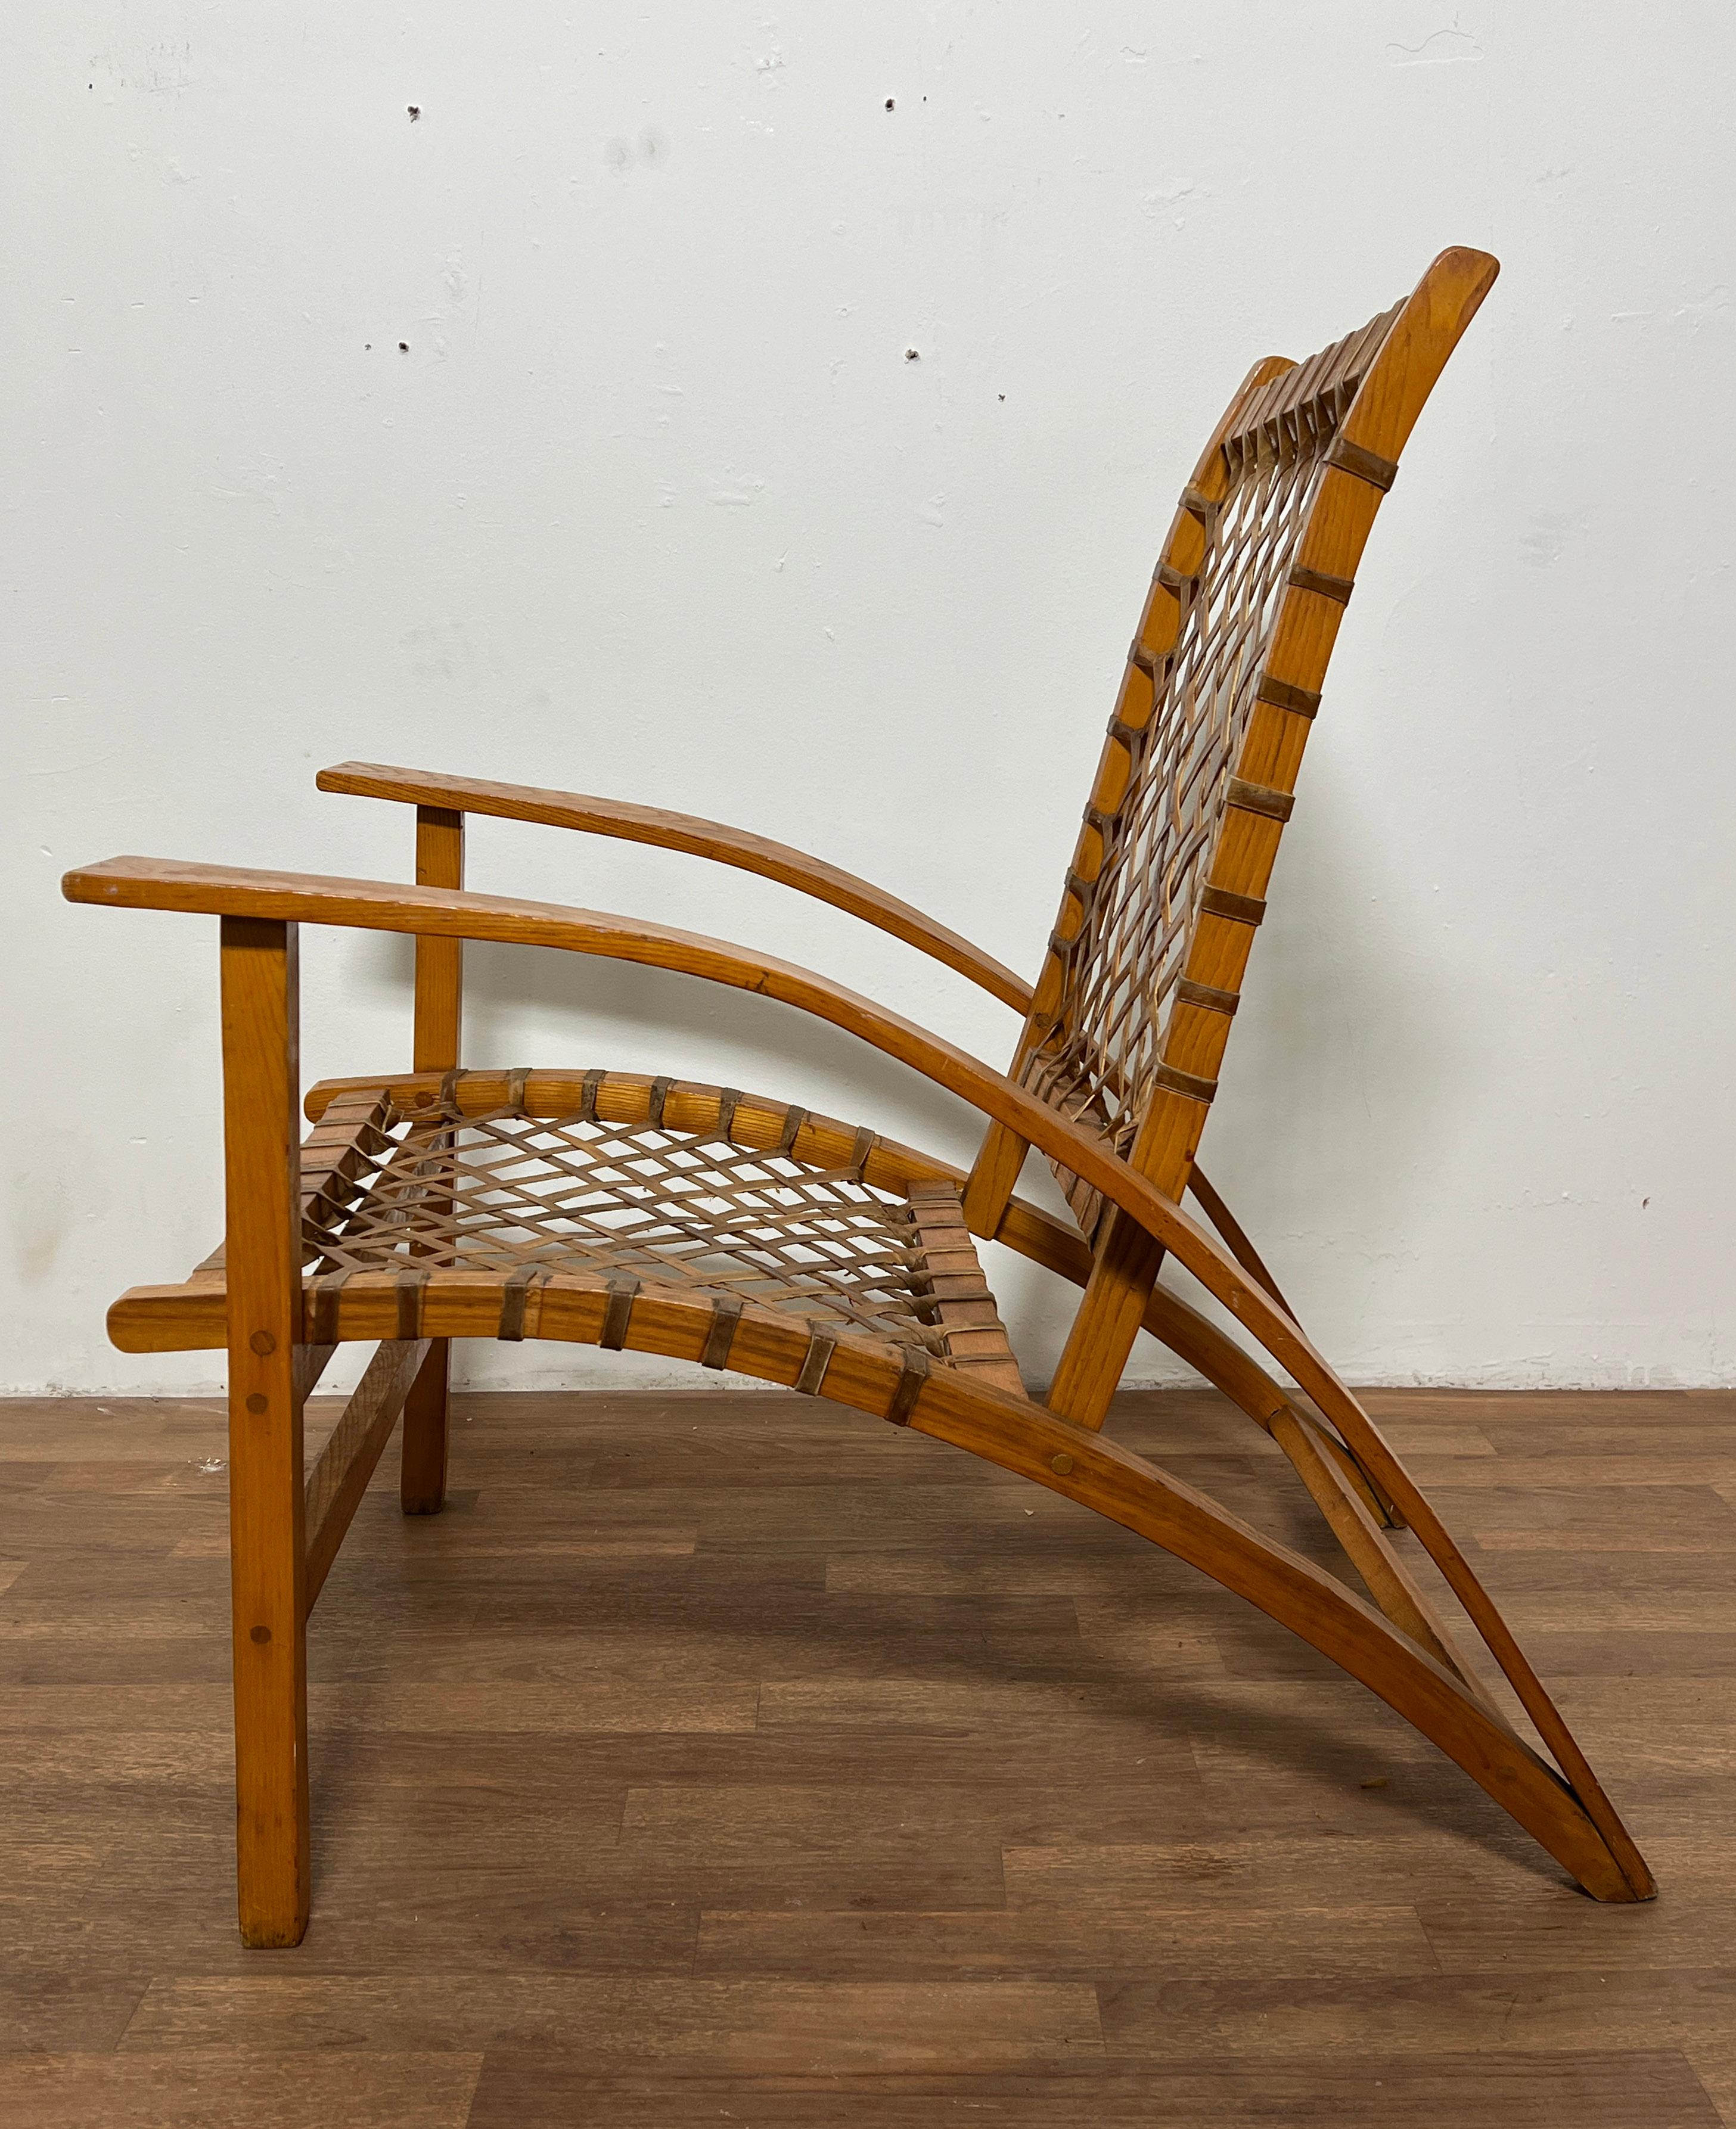 CIRCA 1950er Jahre Rohleder geflochtener Stuhl im Adirondack-Stil von Vermont Tubbs Snowshoe Company, entworfen vom Gropius-geschulten Architekten Carl Koch für seine Techbuilt-Häuser.